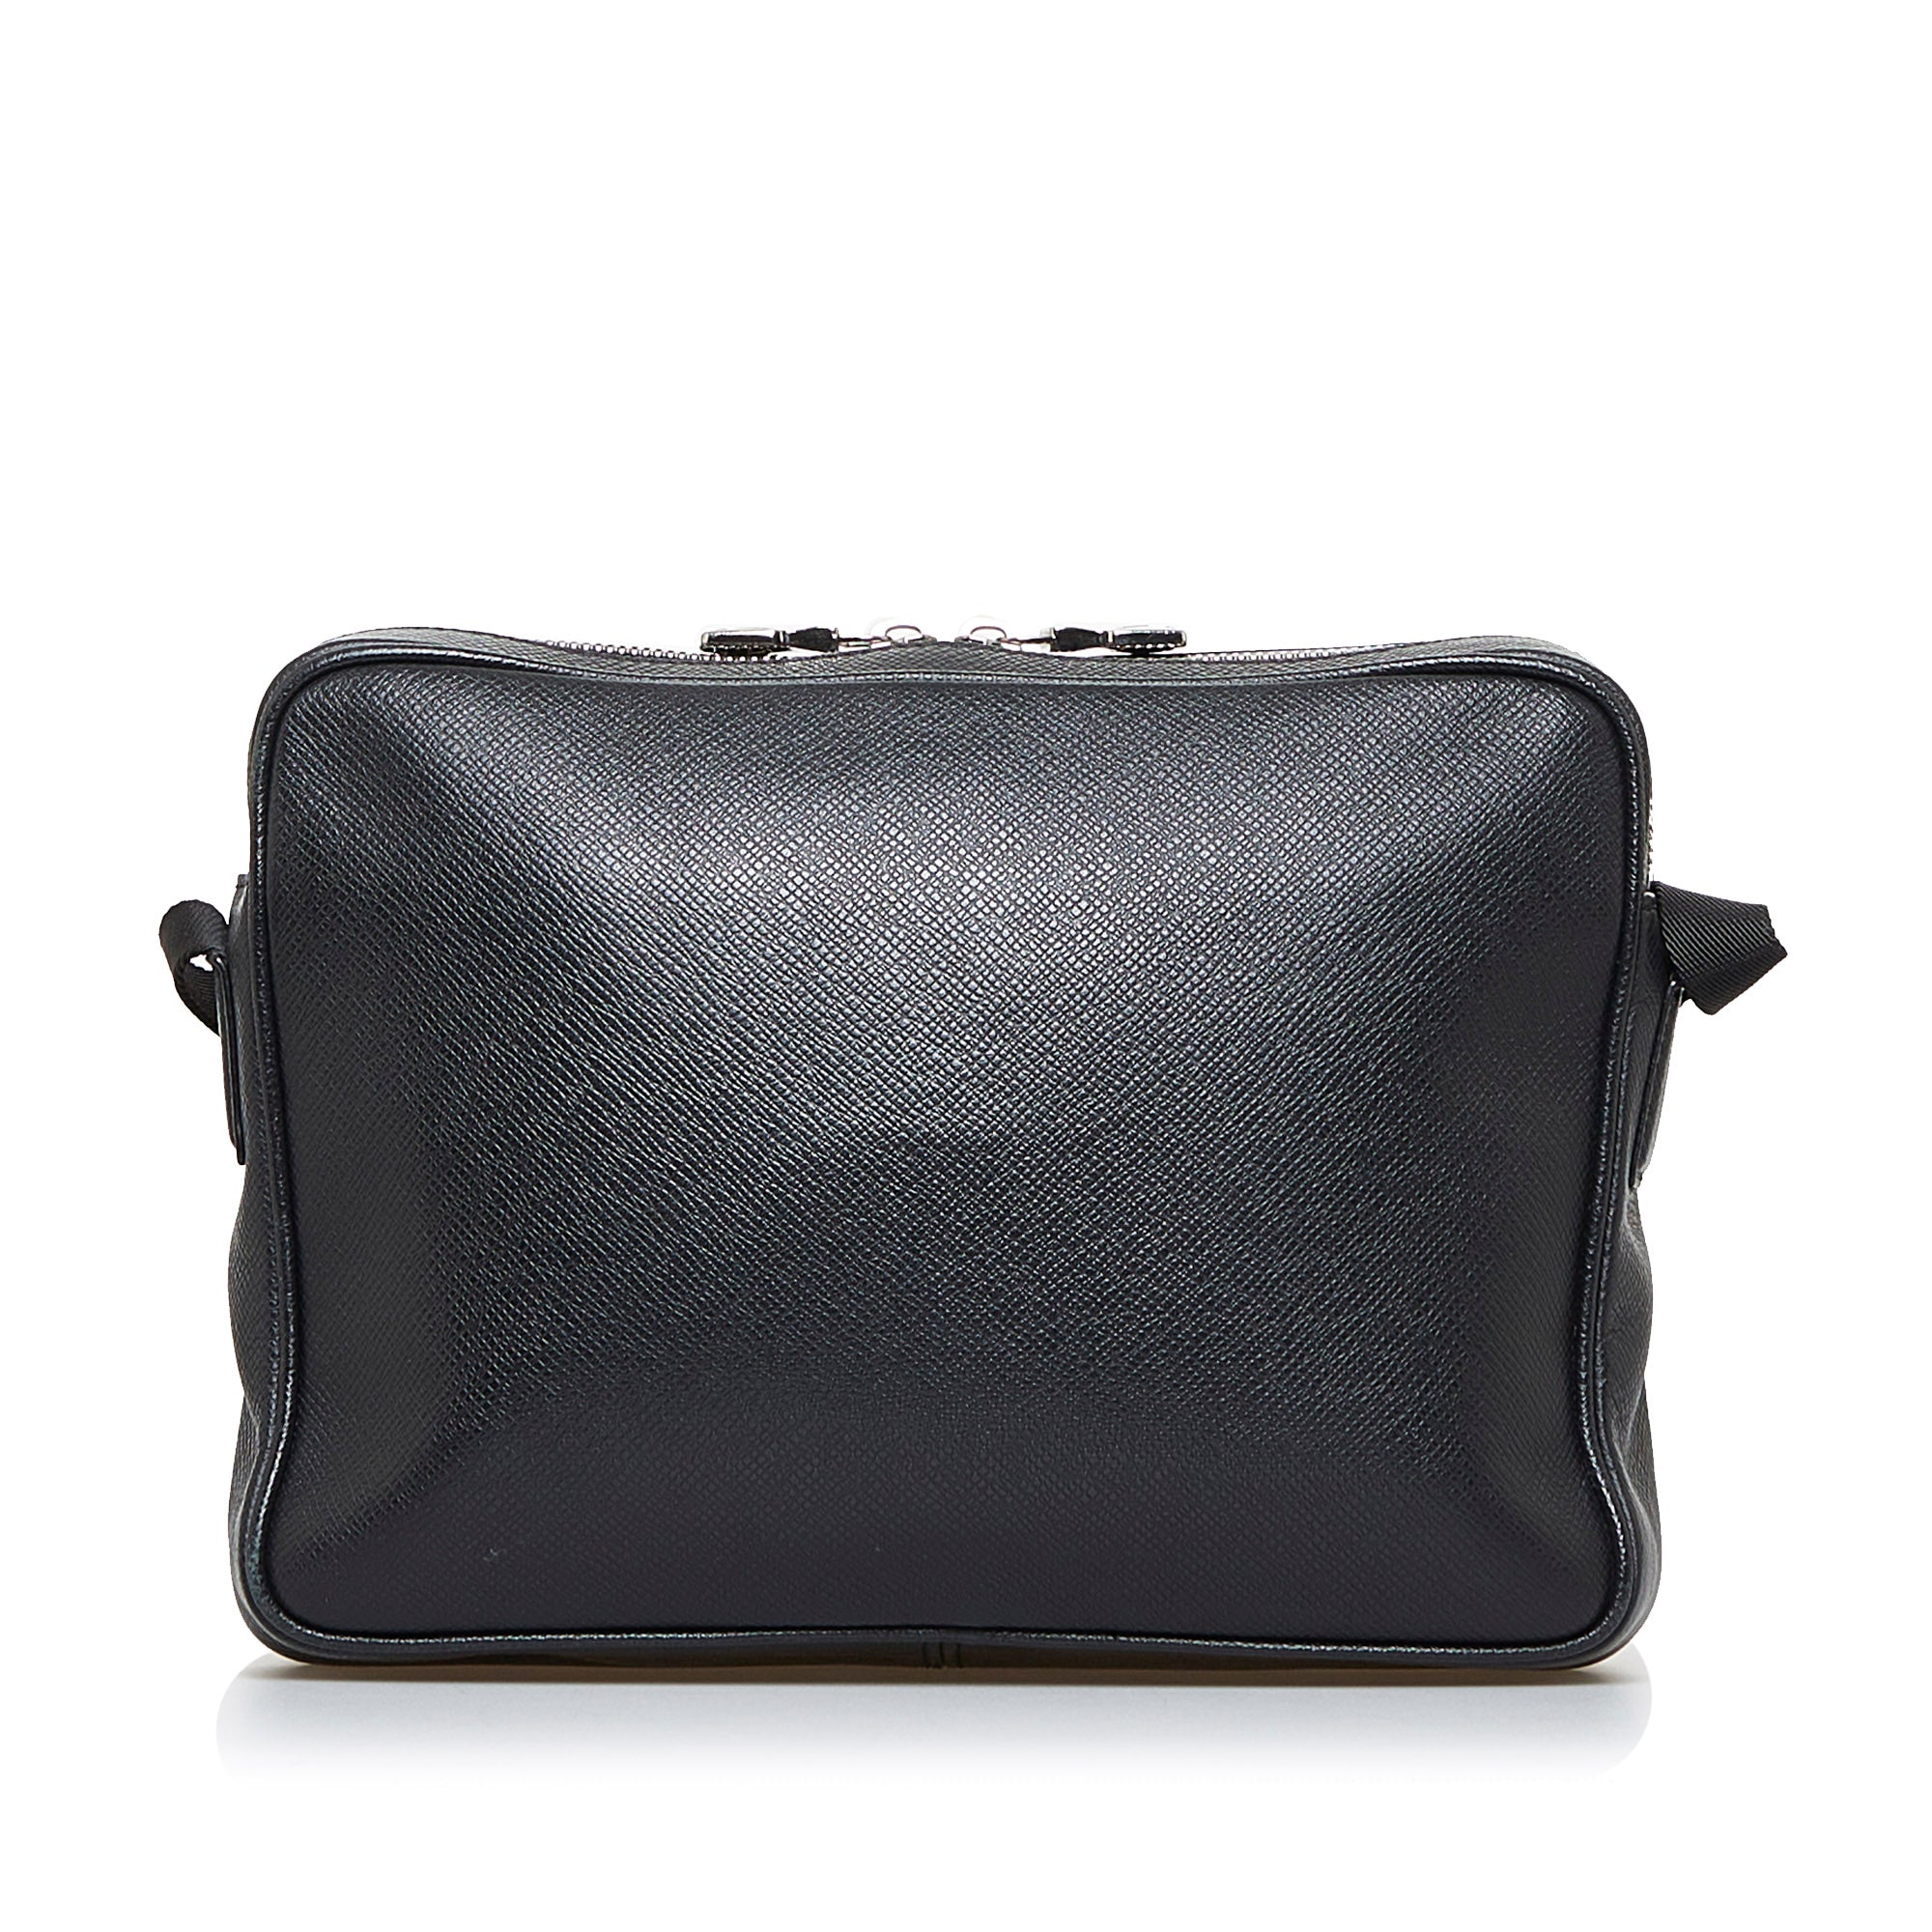 Black Louis Vuitton Taiga Outdoor Messenger Crossbody Bag